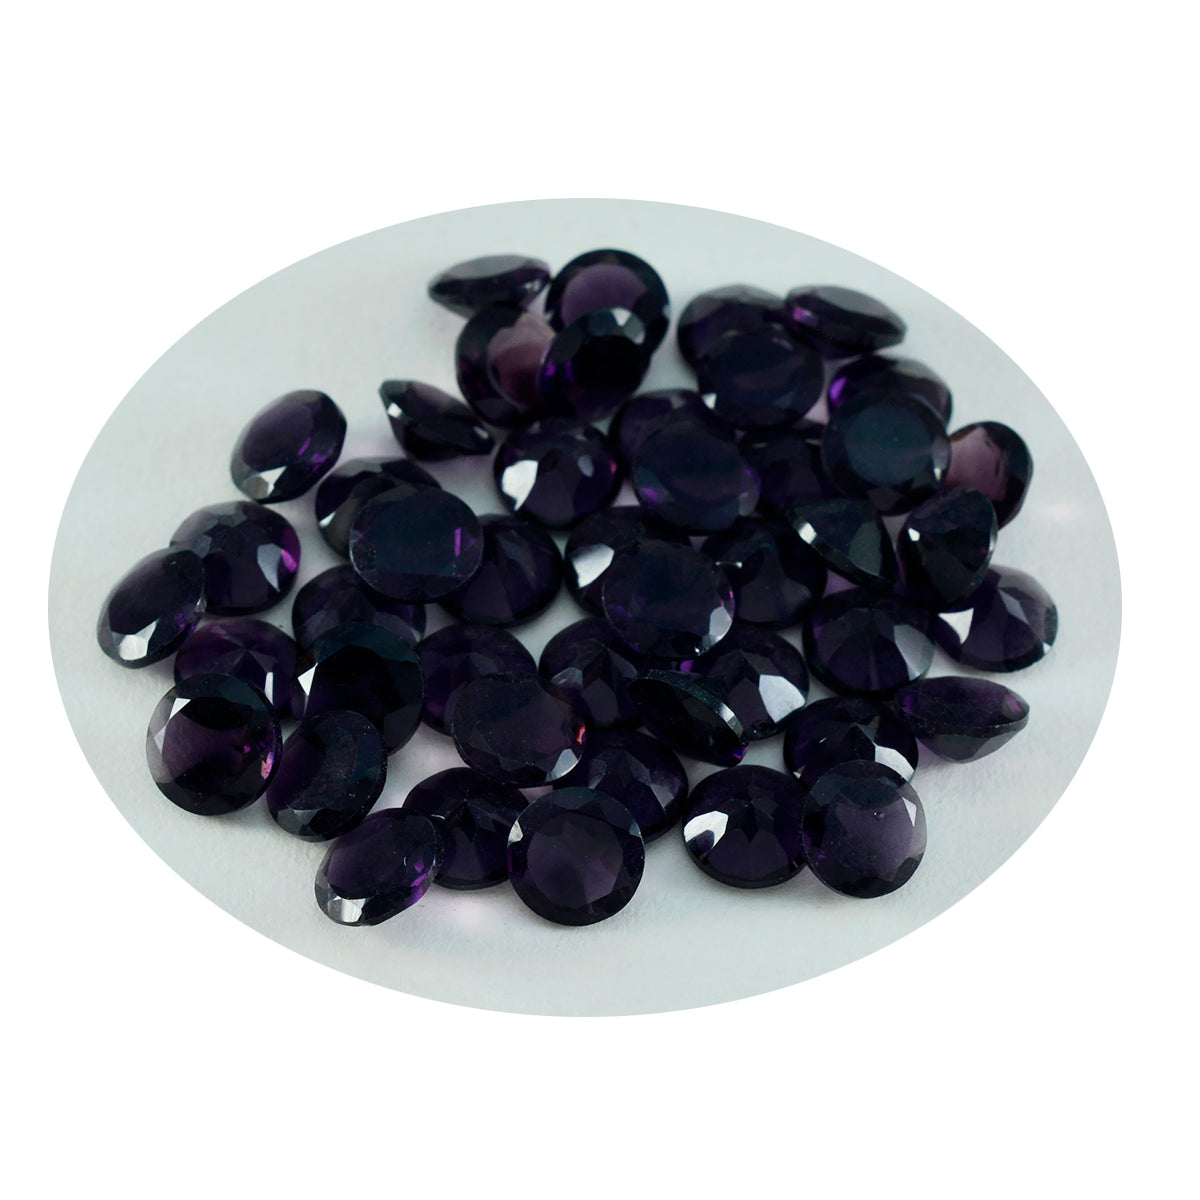 Riyogems 1 pièce améthyste violette cz à facettes 6x6mm forme ronde jolie pierre précieuse en vrac de qualité